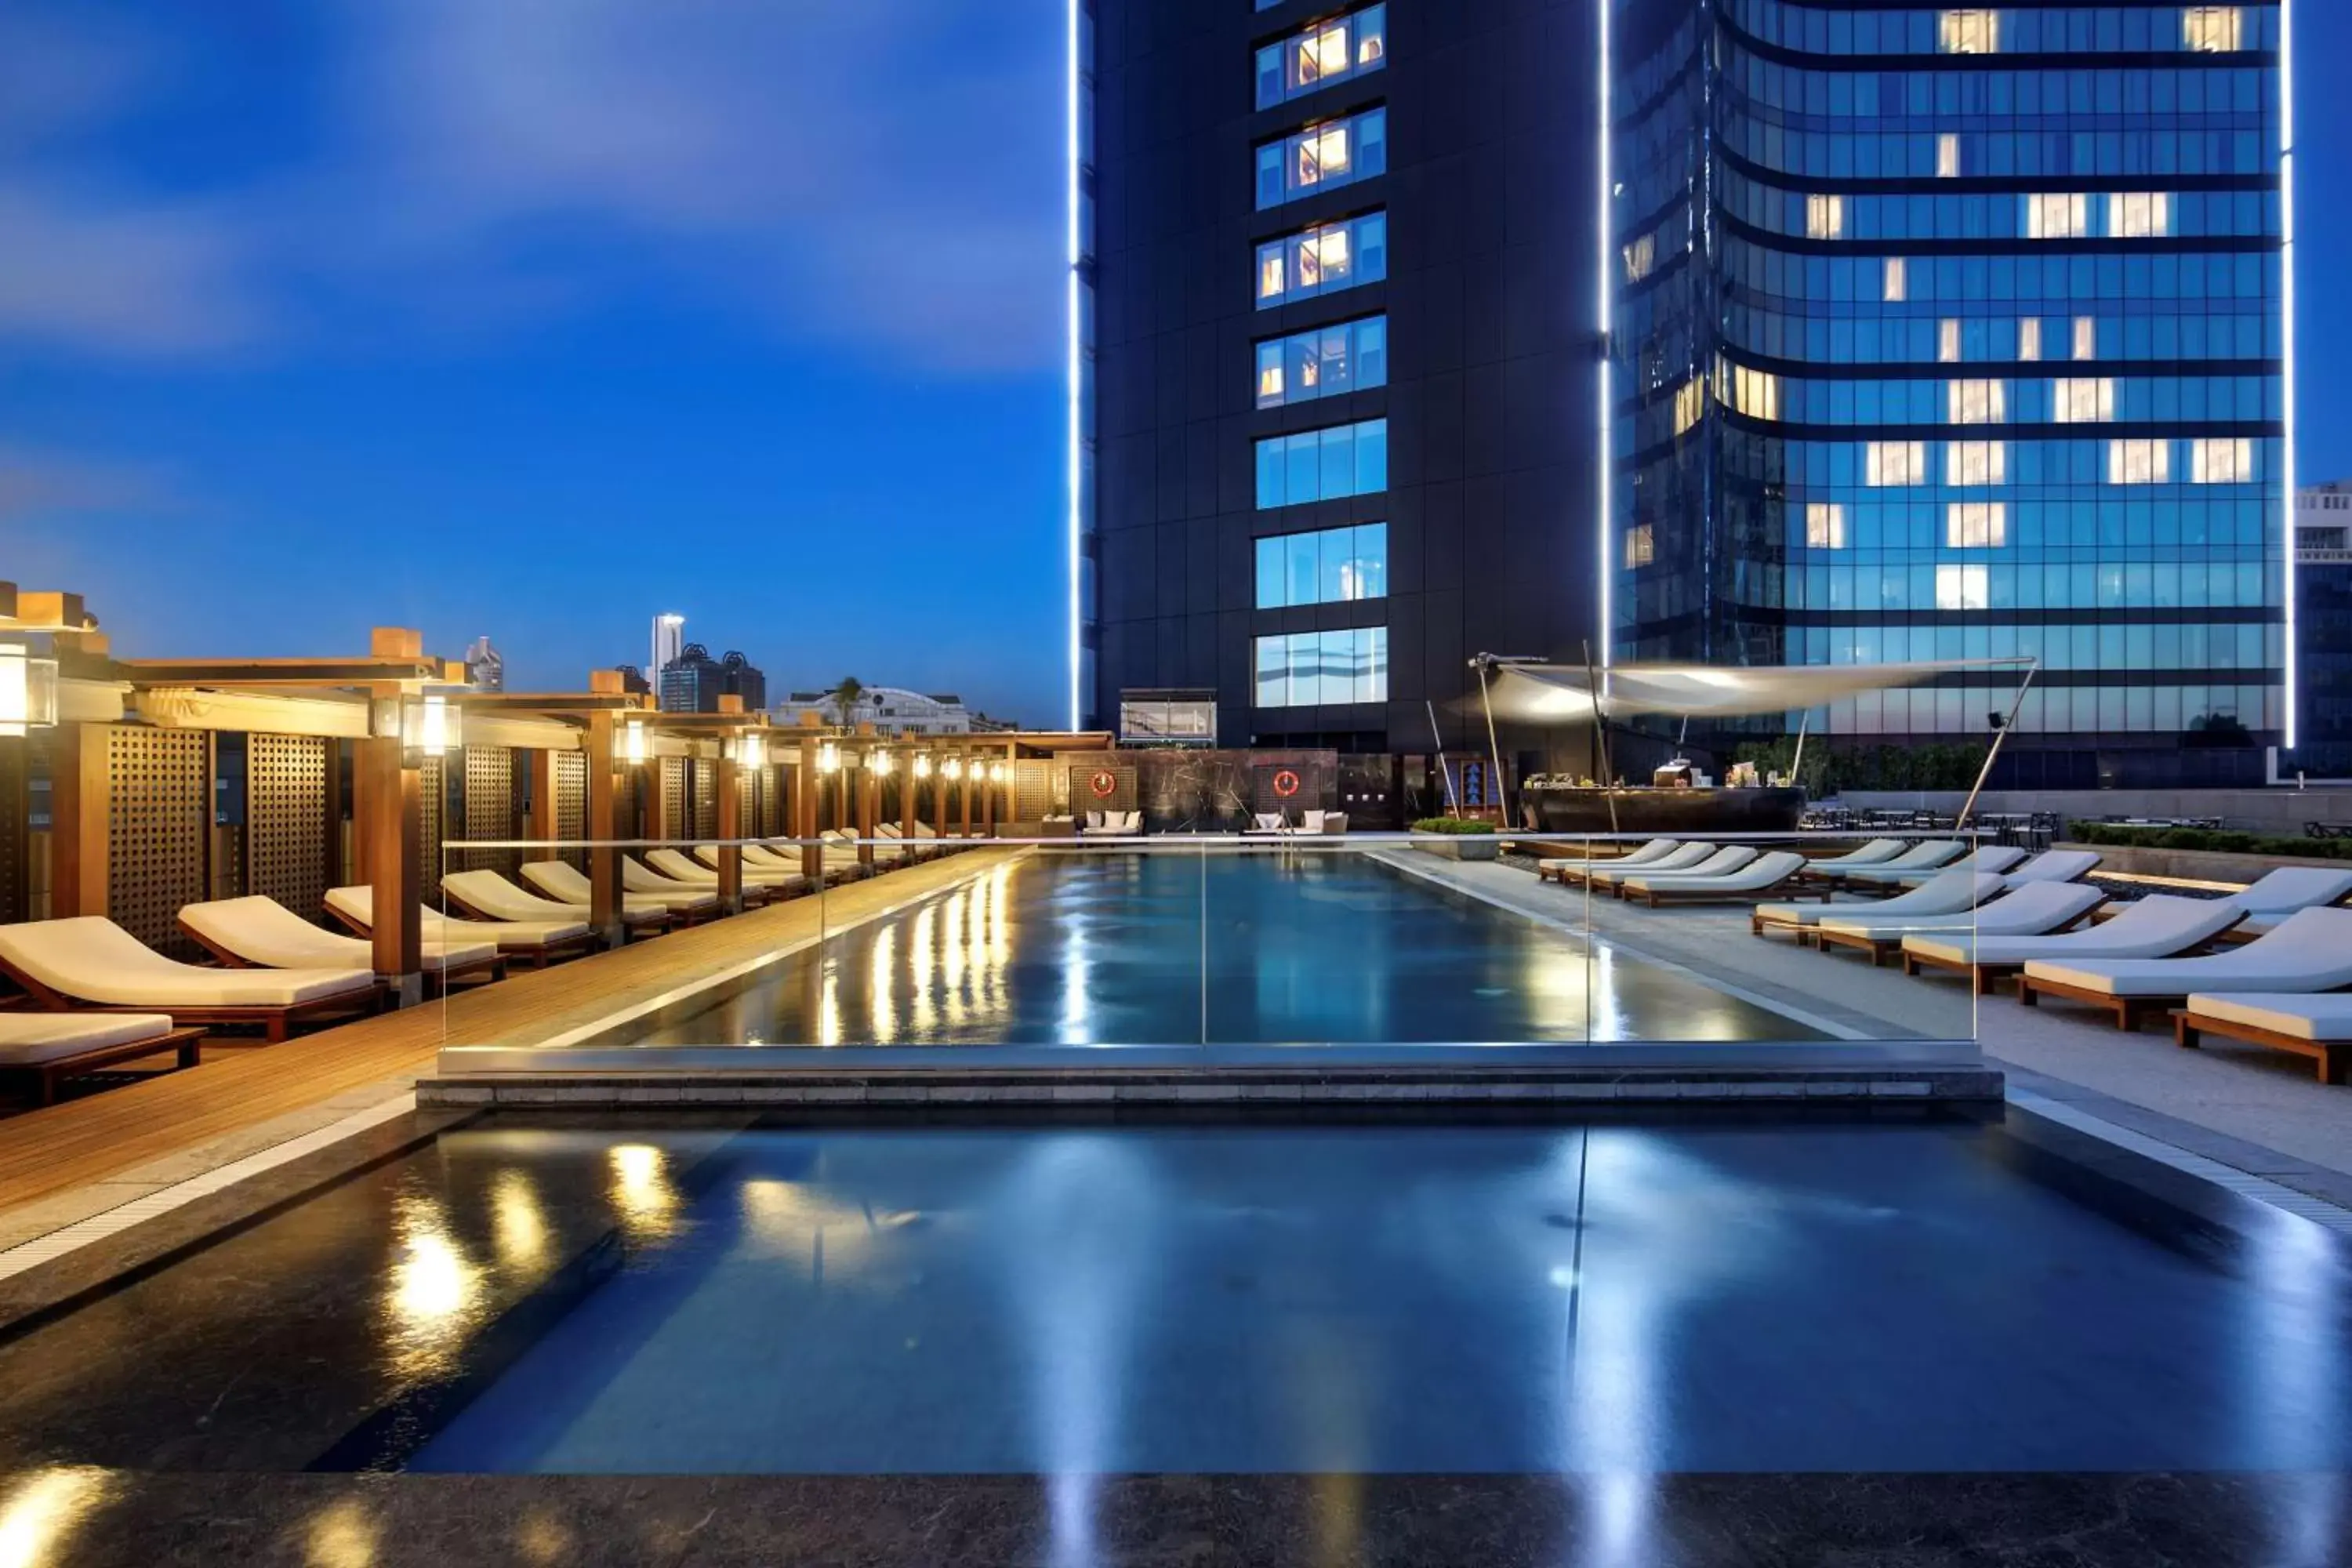 Pool view, Swimming Pool in Hilton Istanbul Bomonti